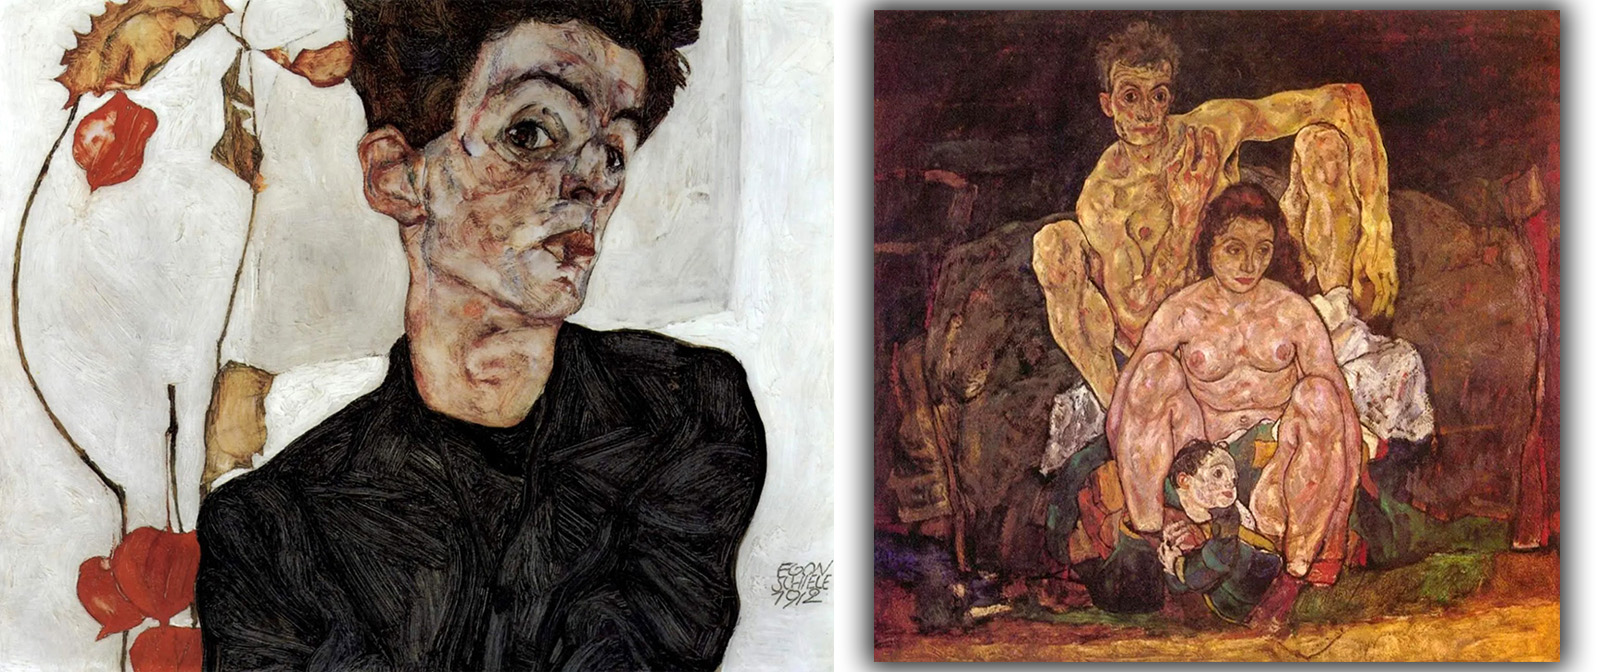 Венский порнограф» Эгон Шиле, его откровенные картины и многочисленные  связи, которые оправдывались лишь талантом художника.